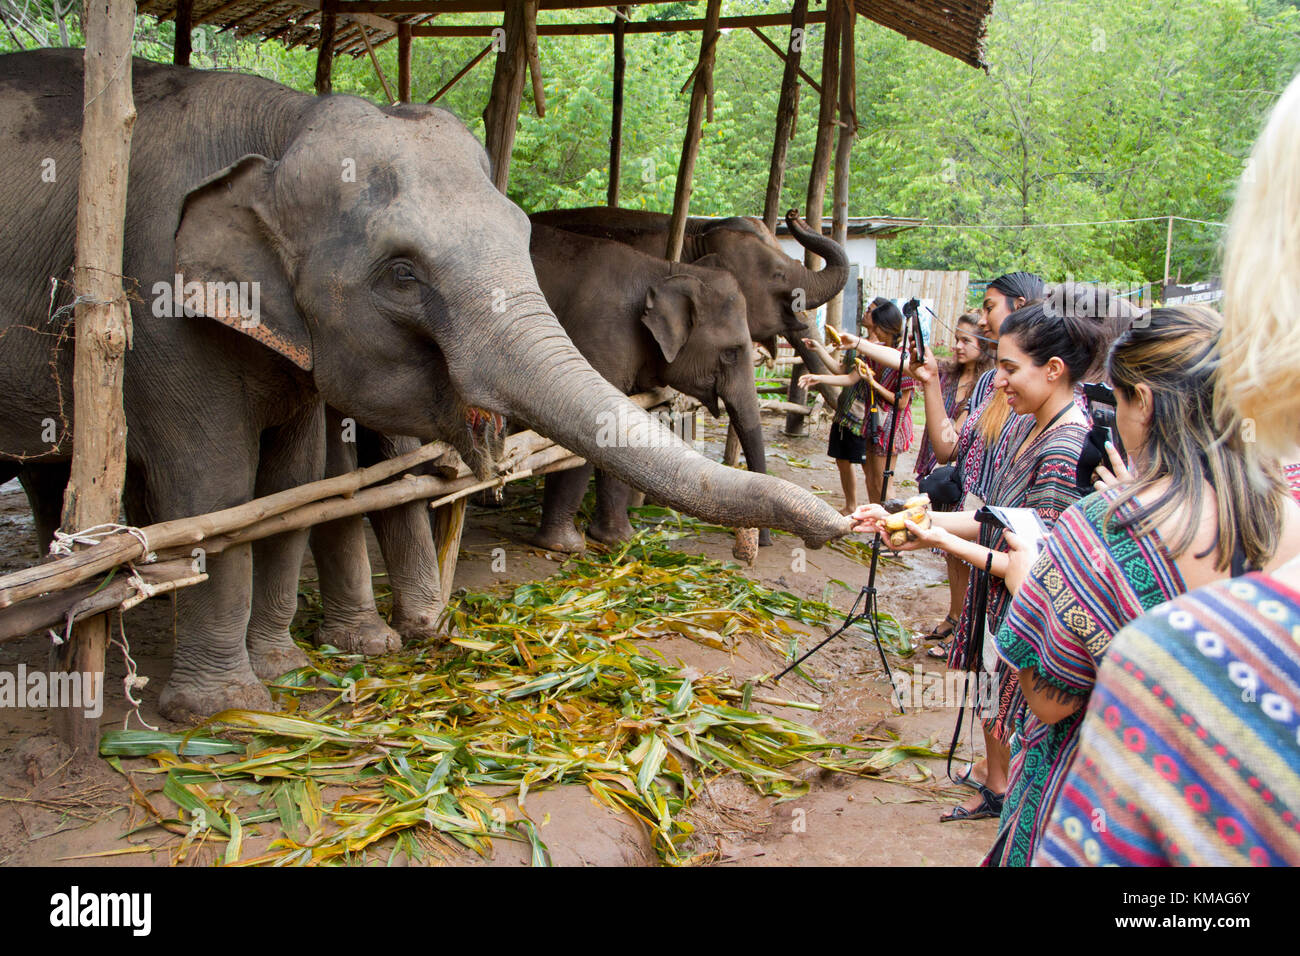 Ai visitatori di interagire con gli elefanti in corrispondenza di un elefante santuario in chiang mai. vi è una tendenza verso un non-equitazione santuari di elefanti in Thailandia dove vi Foto Stock